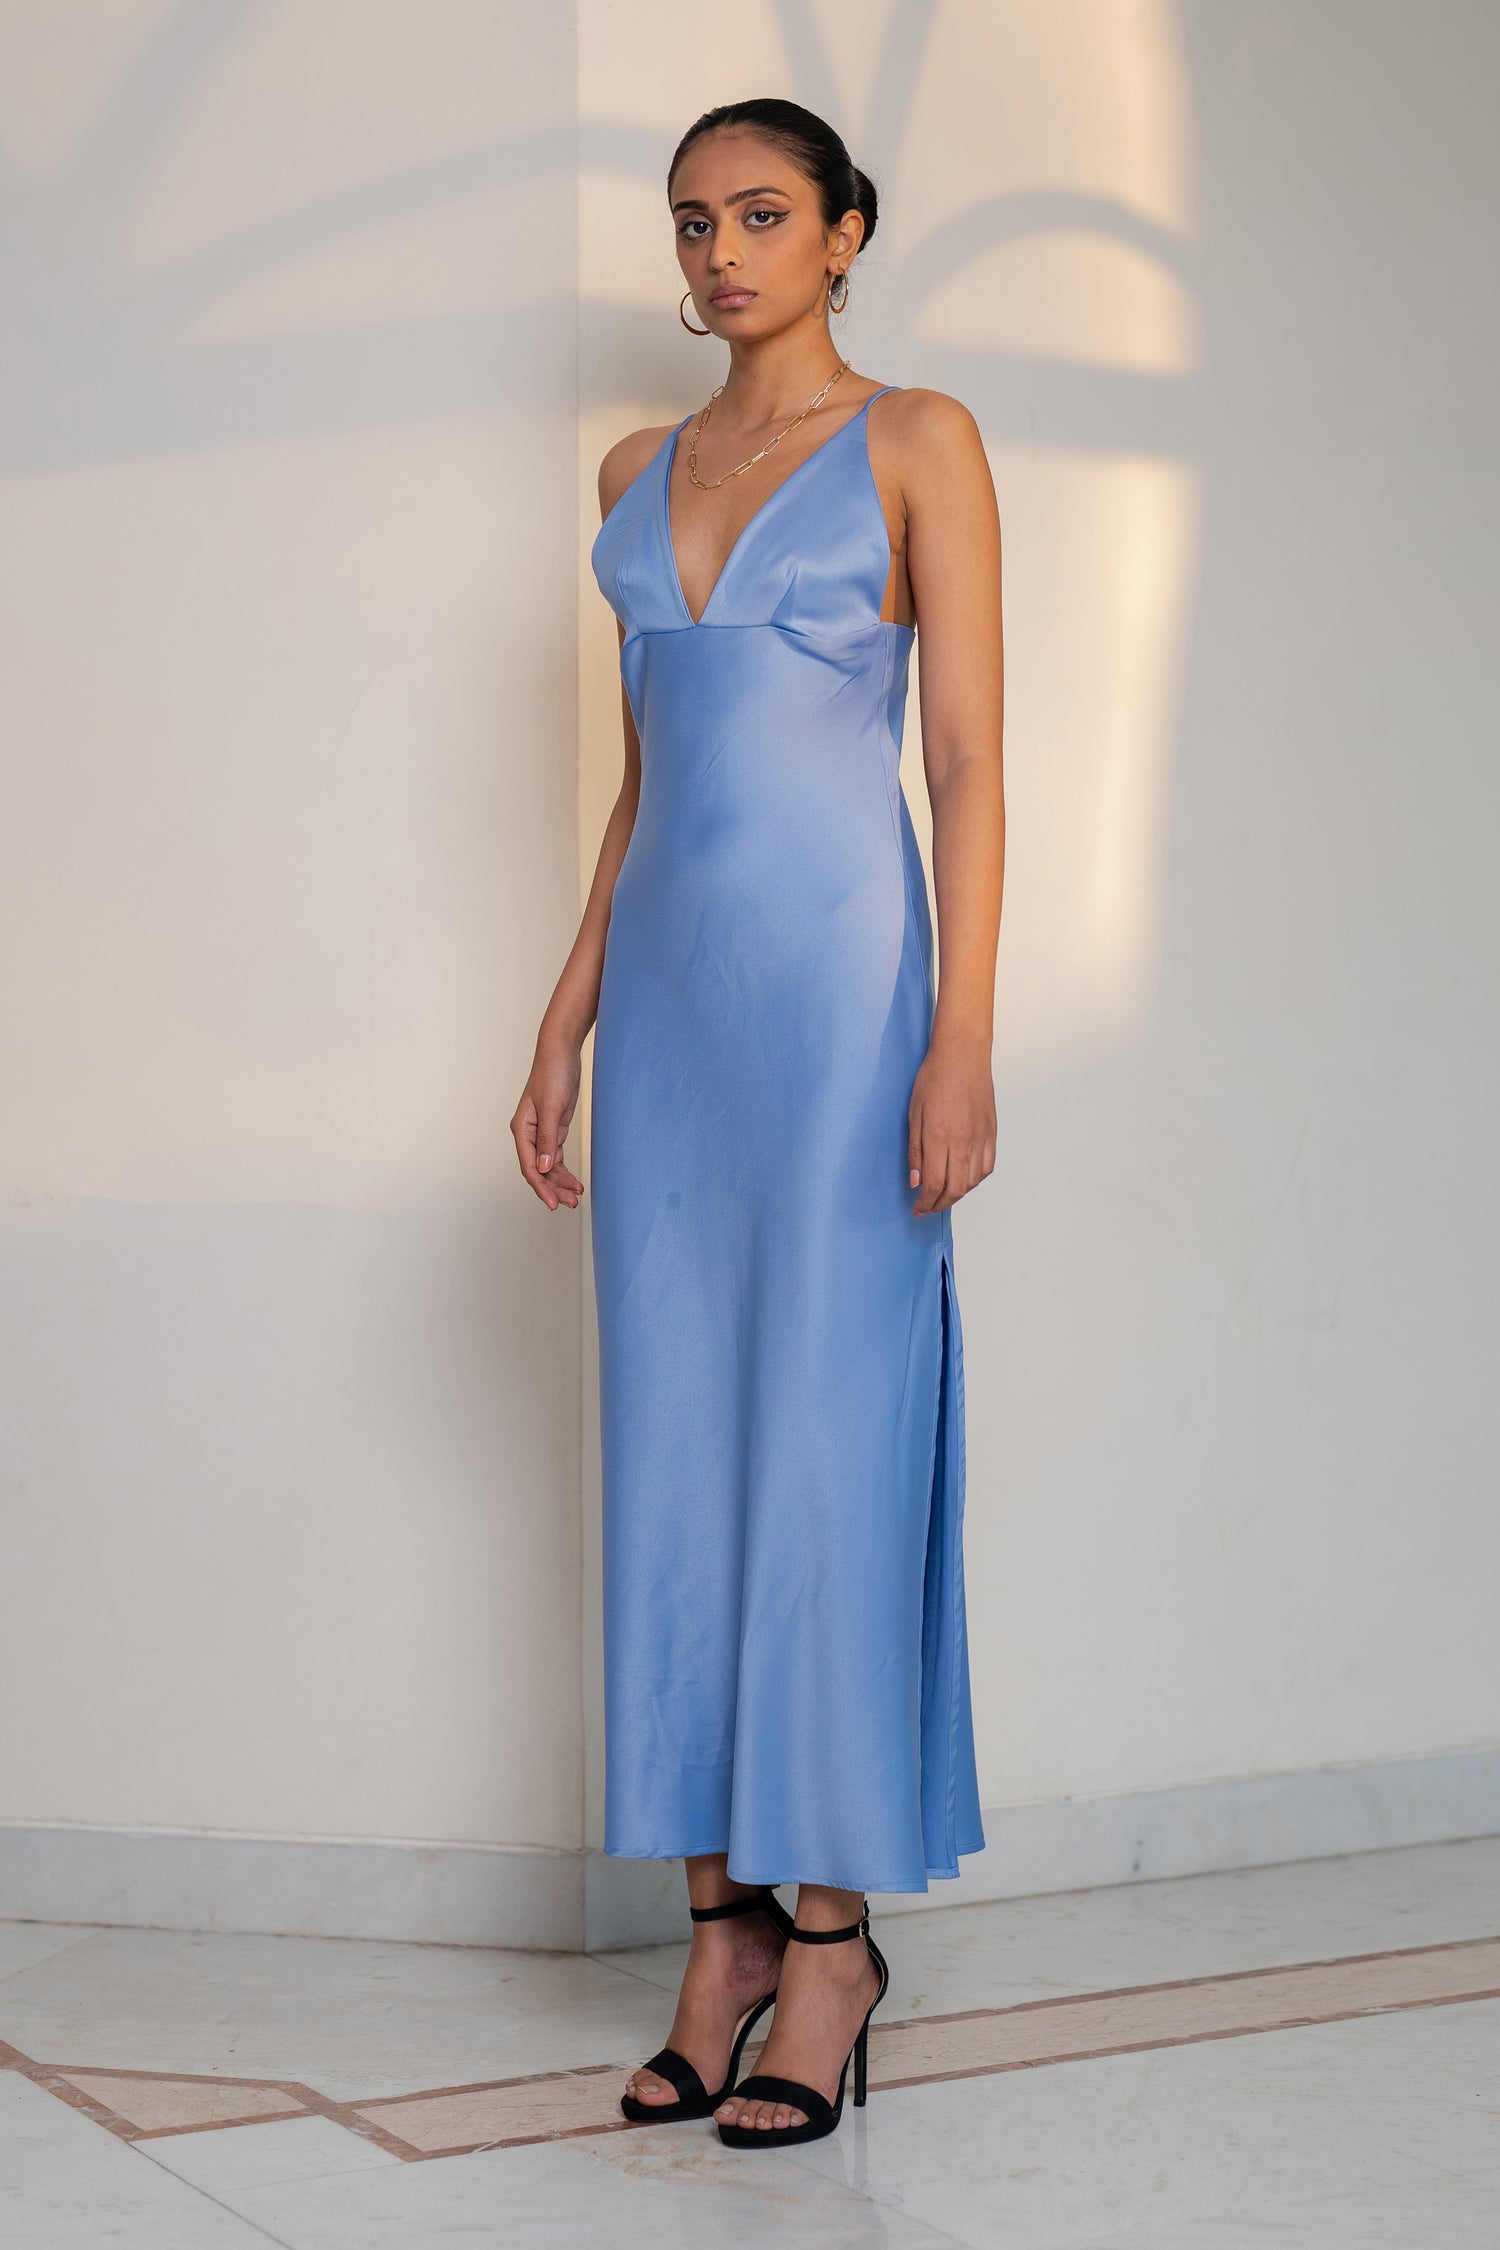 Zena Dress (Maxi length)